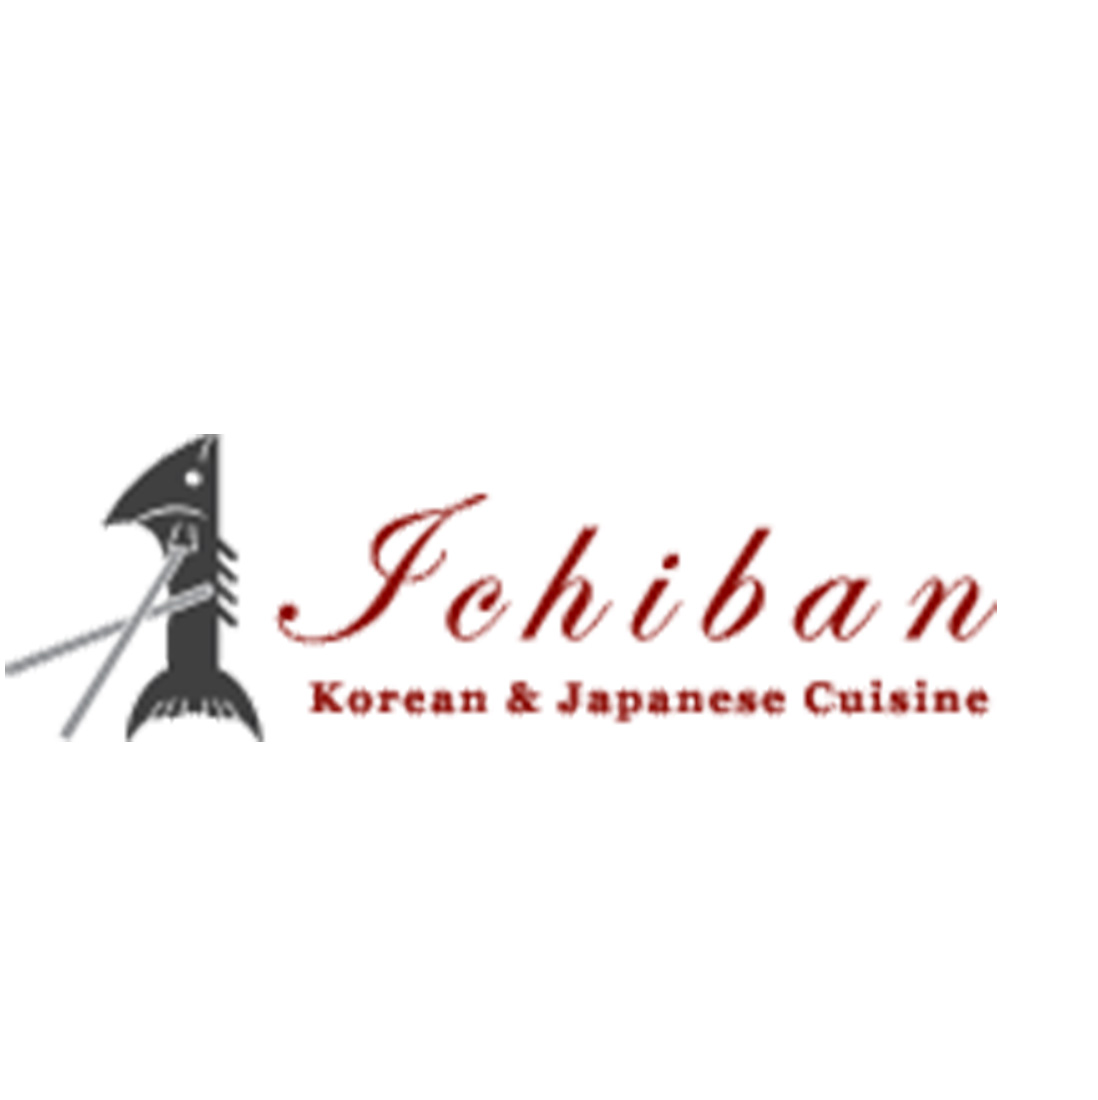 ICHIBAN logo